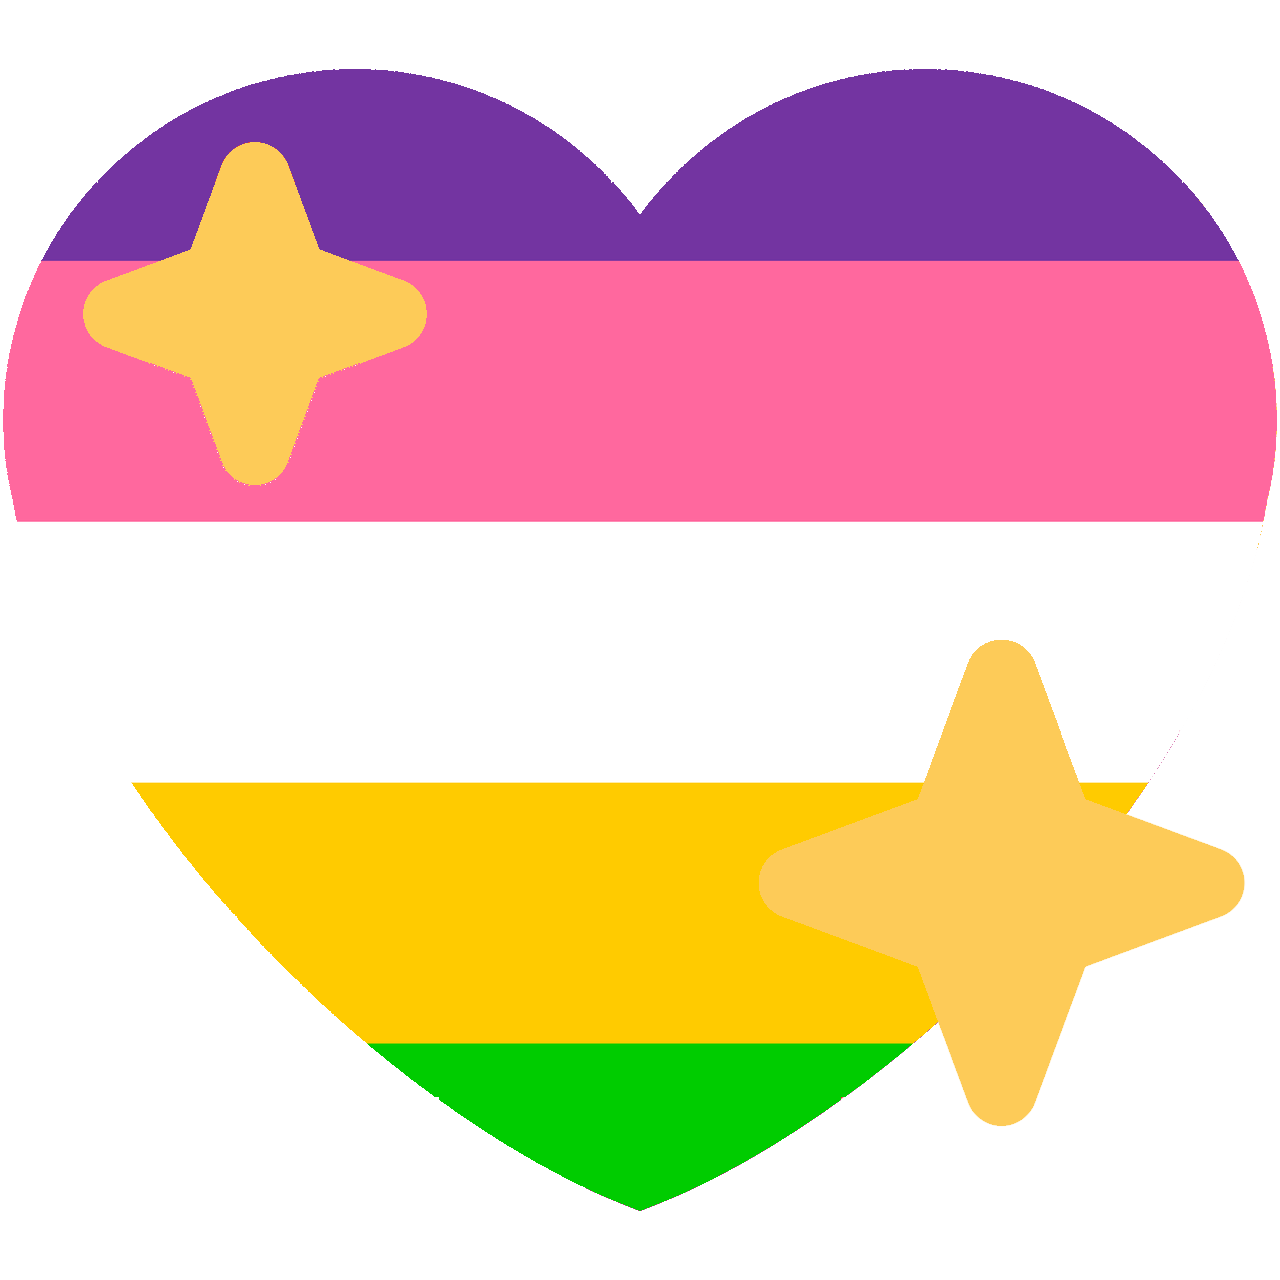 Lesbianpride Discord Emoji 3195